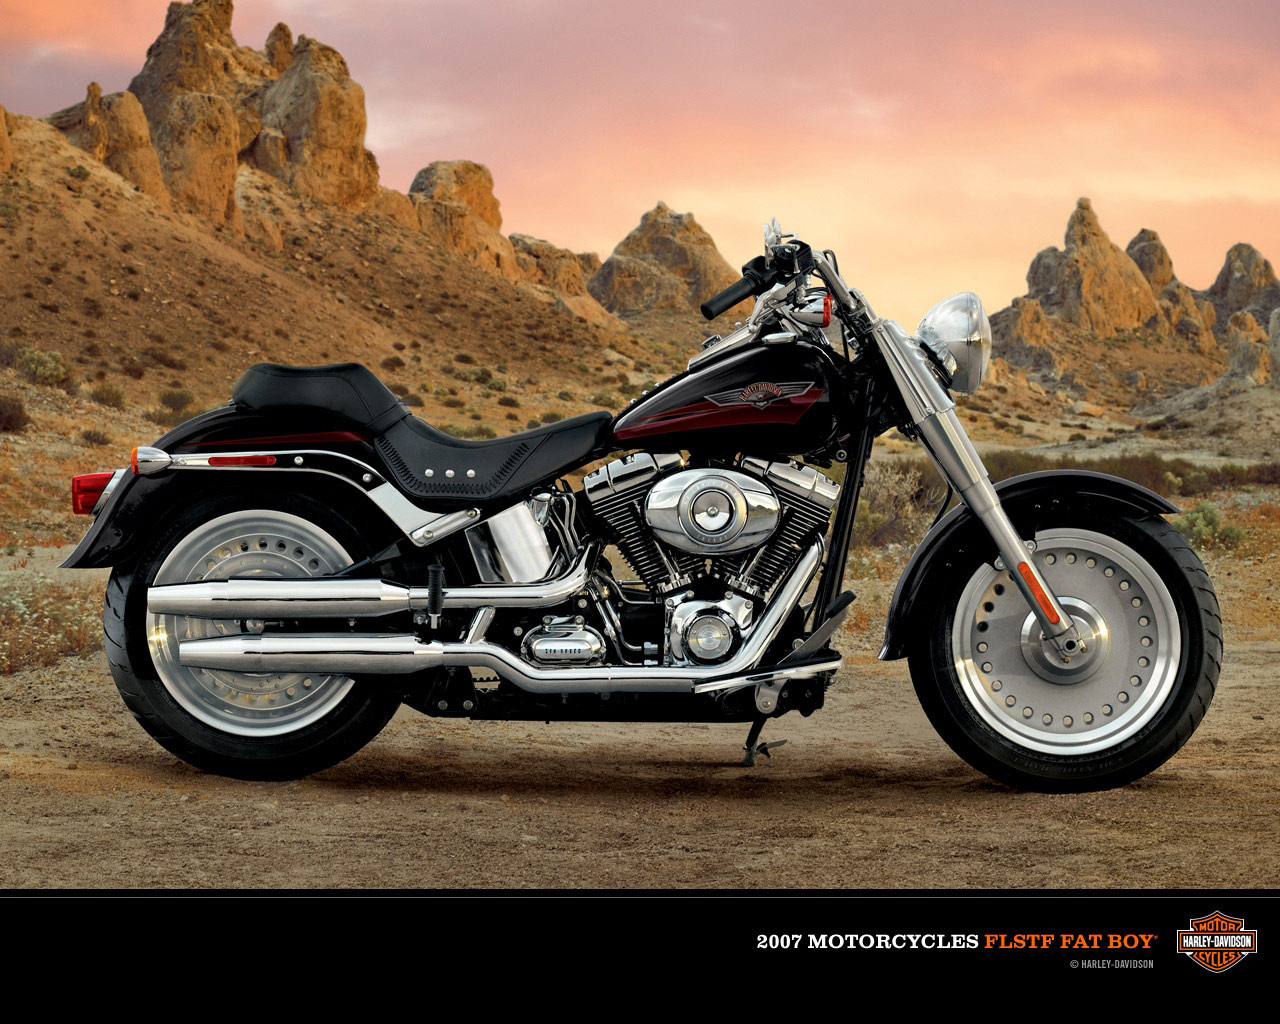 Gambar Motor Harley Davidson 2013 Gambar Keren Dan Unik